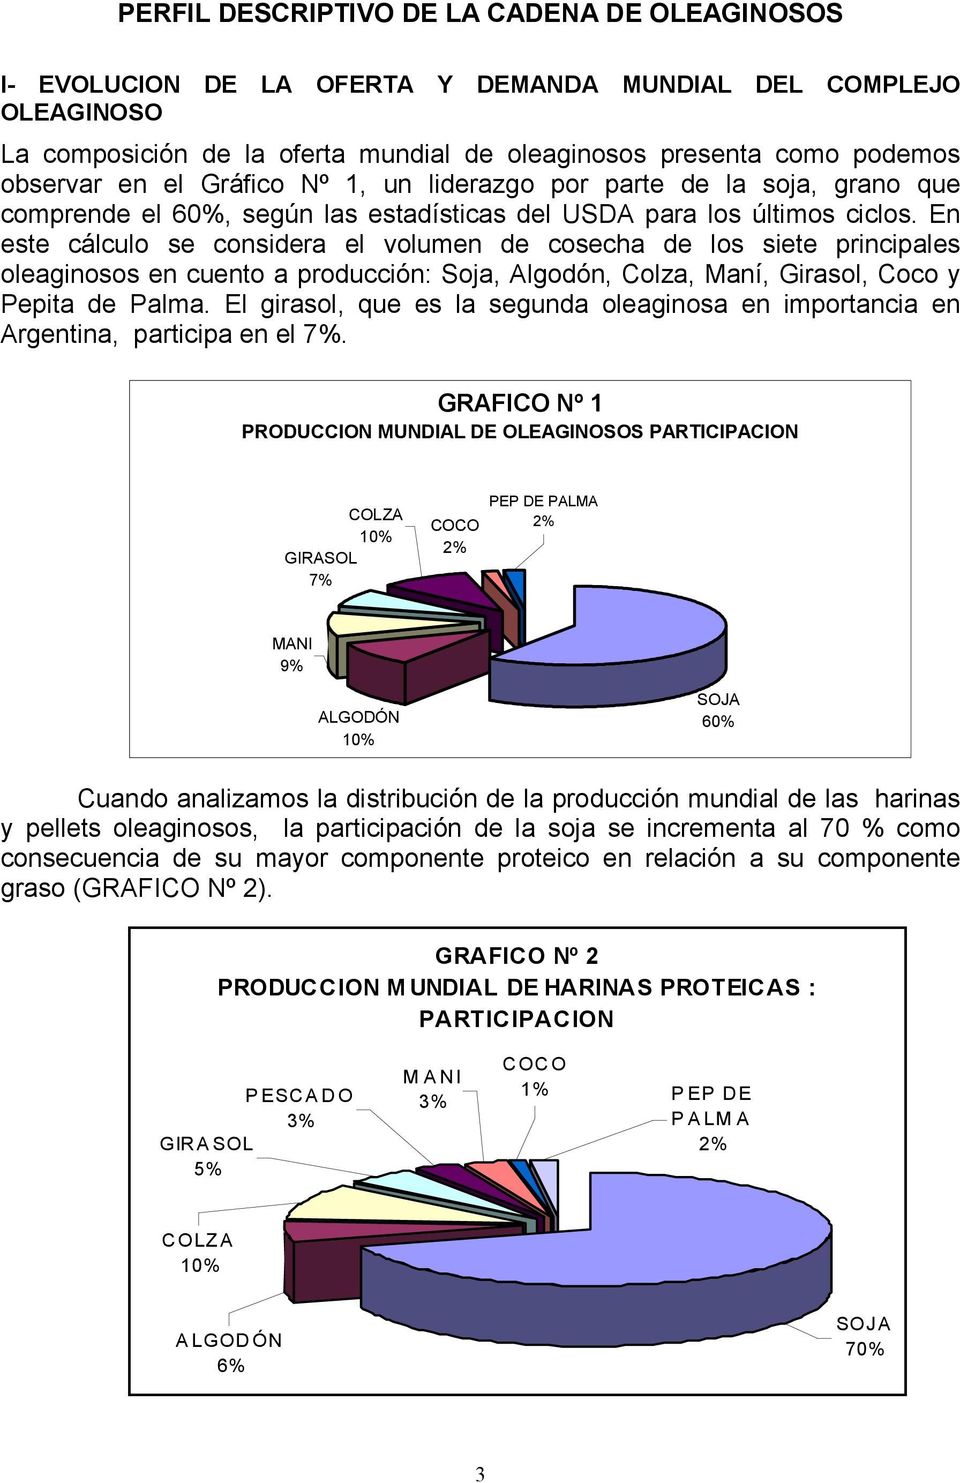 En este cálculo se considera el volumen de cosecha de los siete principales oleaginosos en cuento a producción: Soja, Algodón, Colza, Maní, Girasol, Coco y Pepita de Palma.